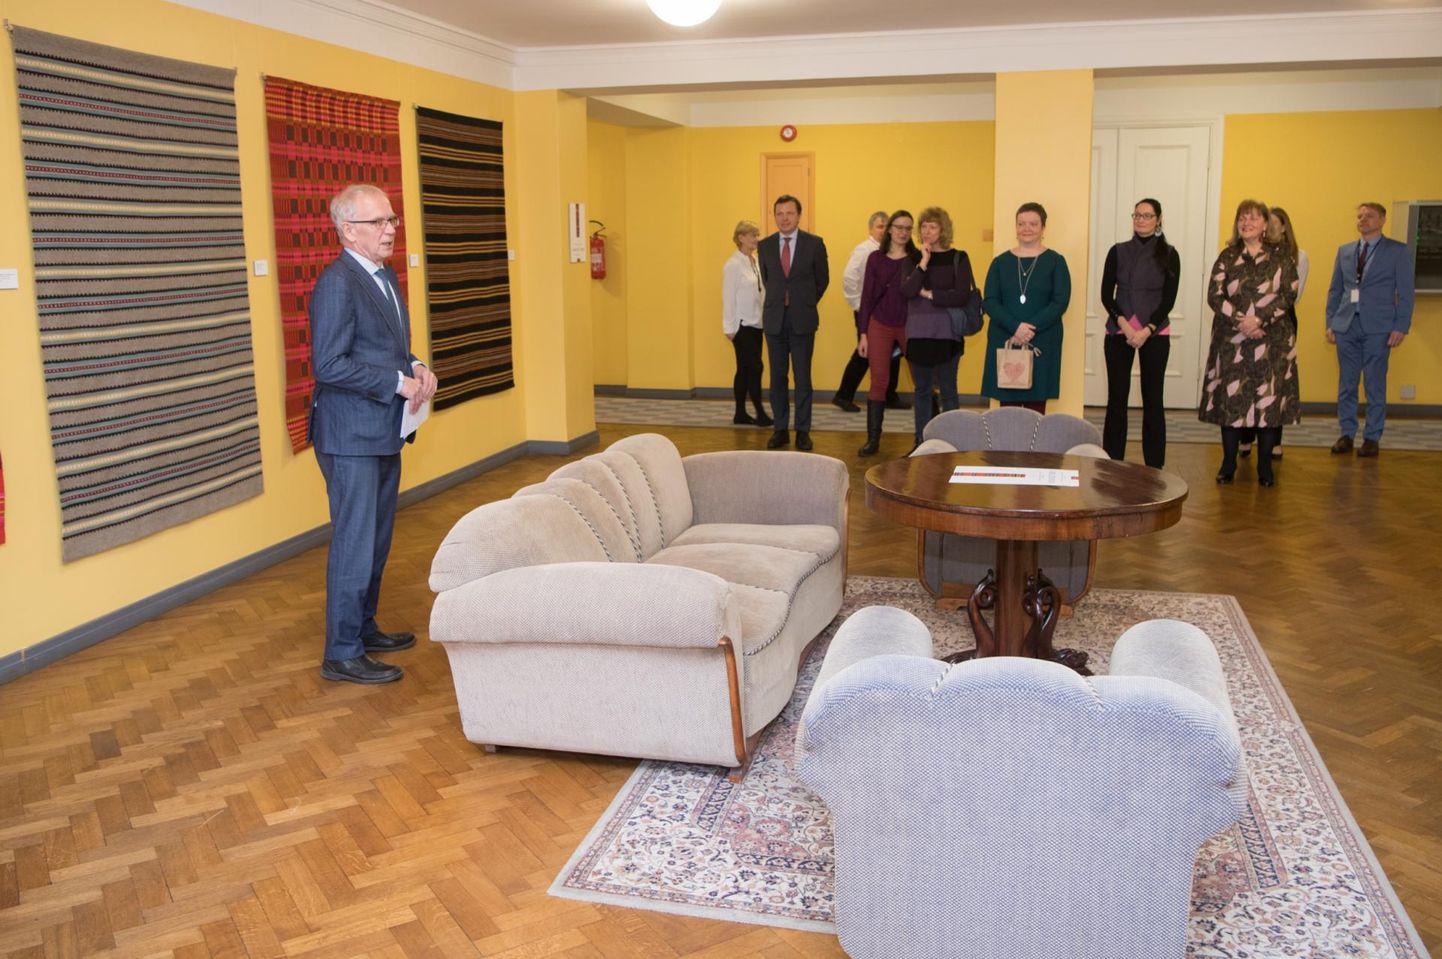 Kultuuriakadeemia tudengite tekinäituse avas riigikogu esimees Eiki Nestor.